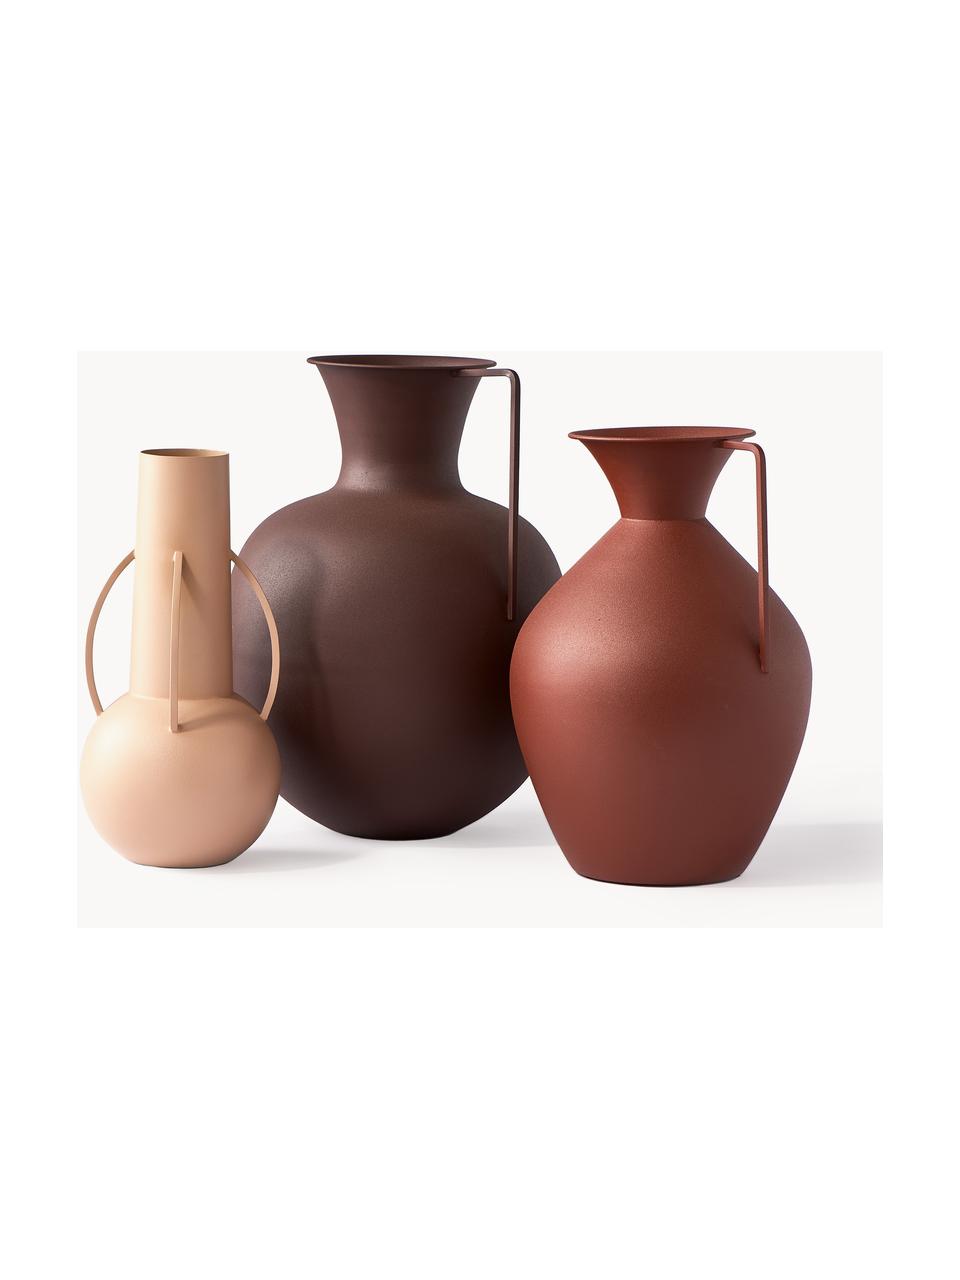 Handgefertigte Design-Vasen Roman, 3er-Set, Eisen, pulverbeschichtet, Rostrot, Beige, Braun, Set mit verschiedenen Grössen